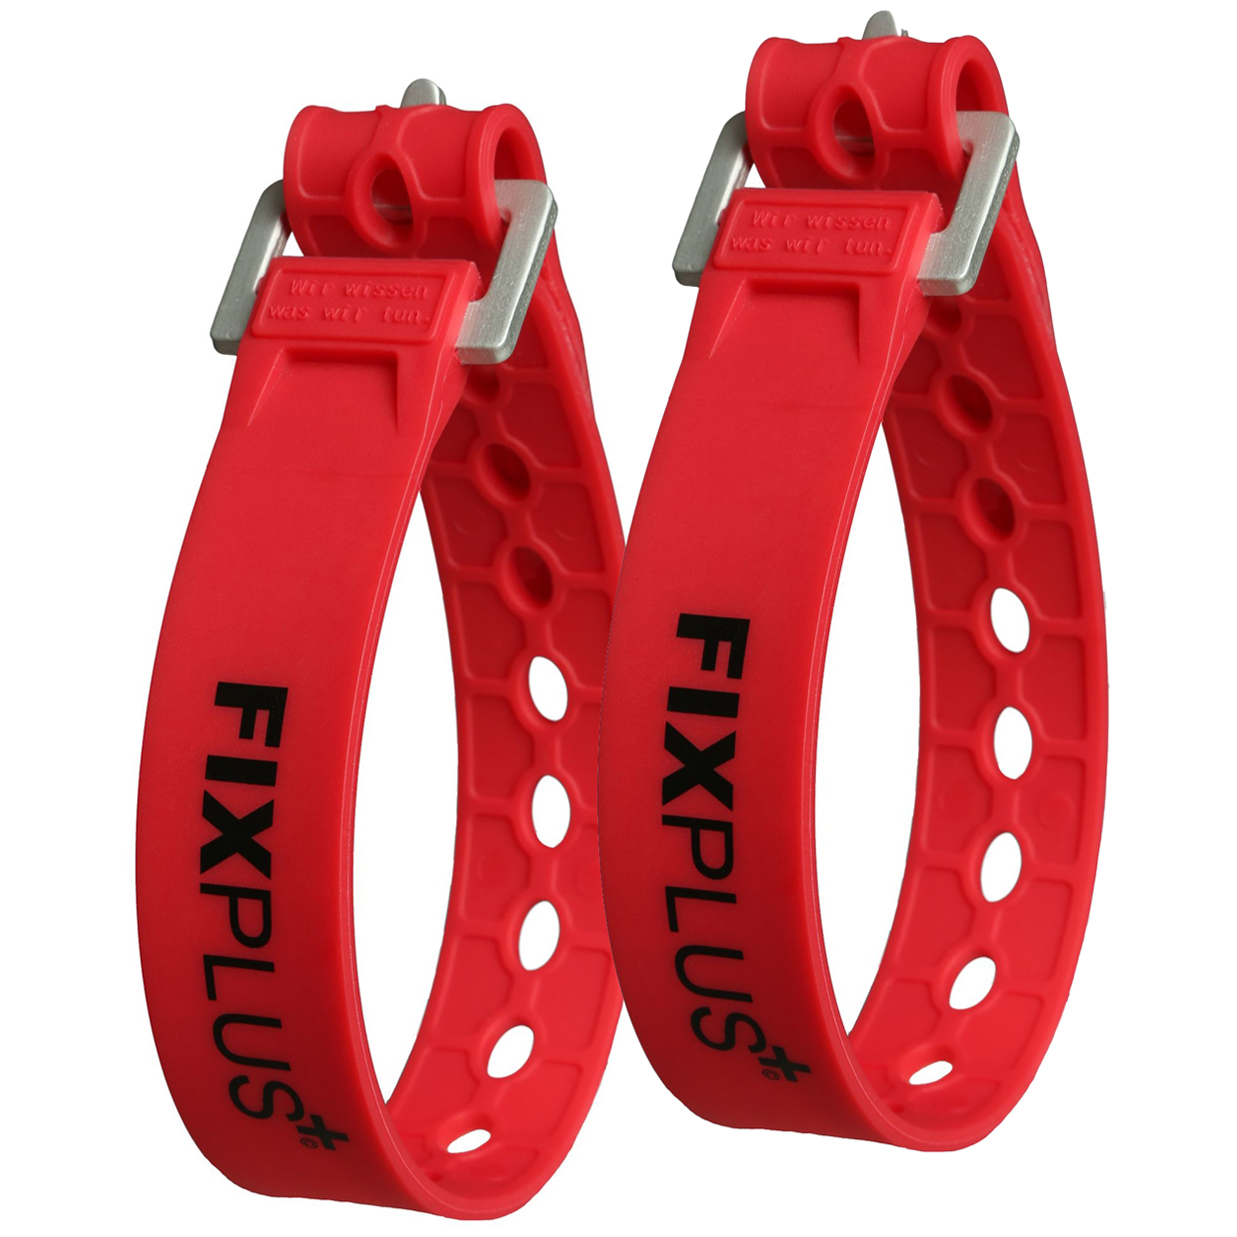 Productfoto van FixPlus Strap 23cm - 2 pcs - red